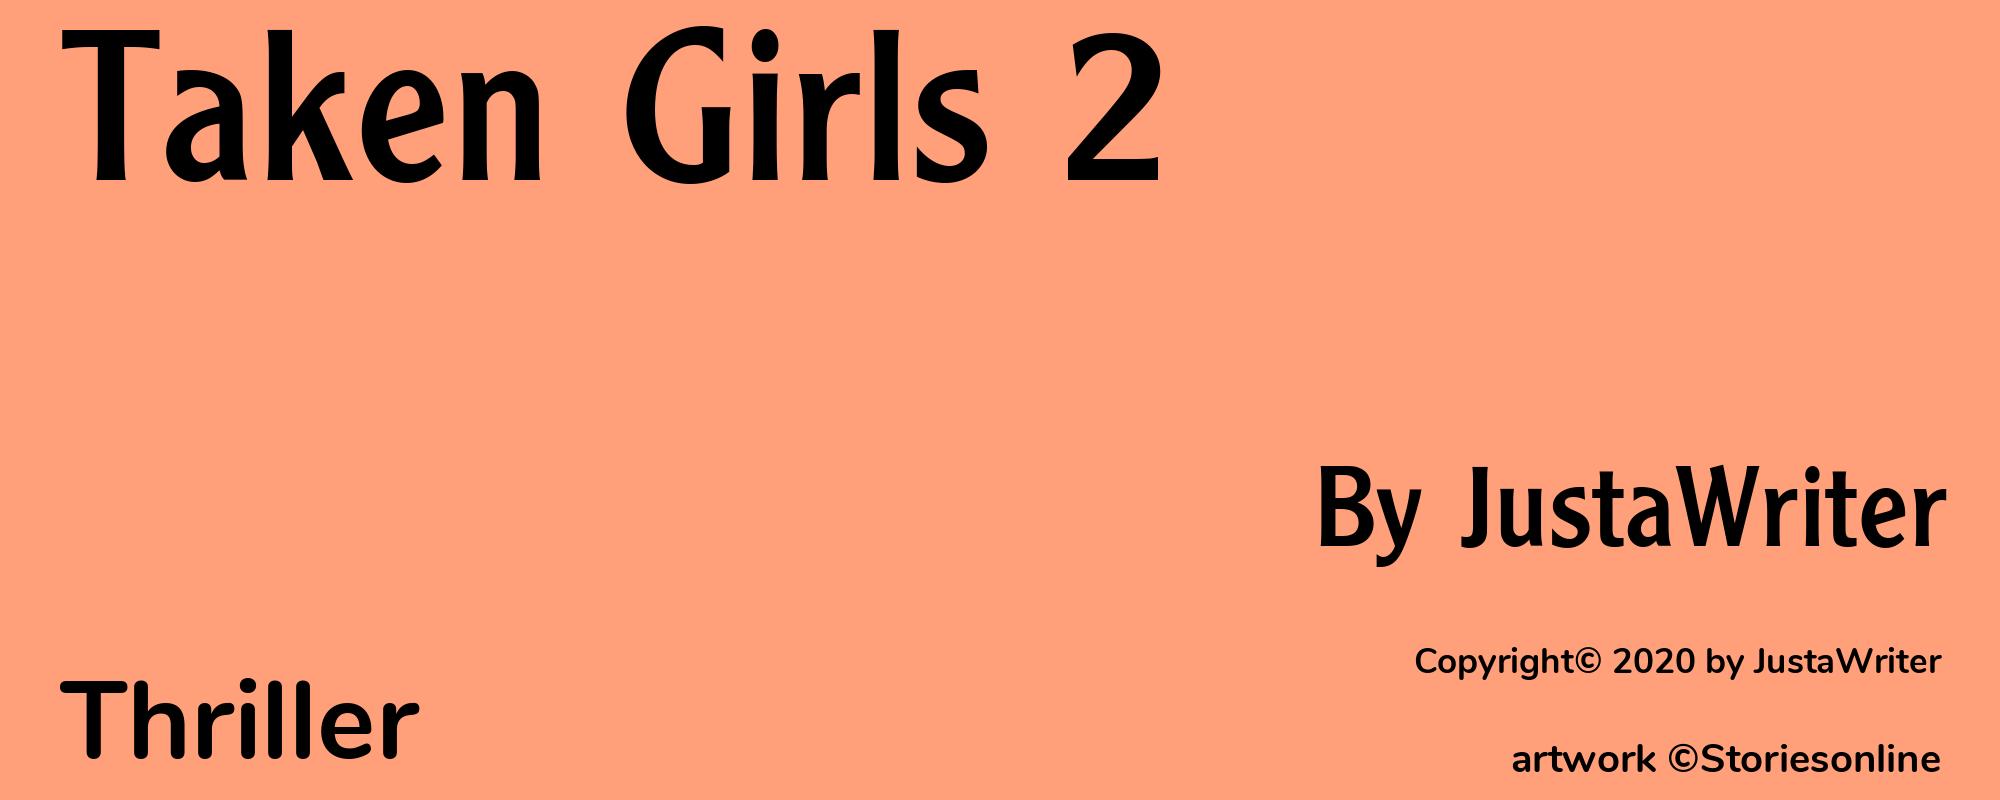 Taken Girls 2 - Cover